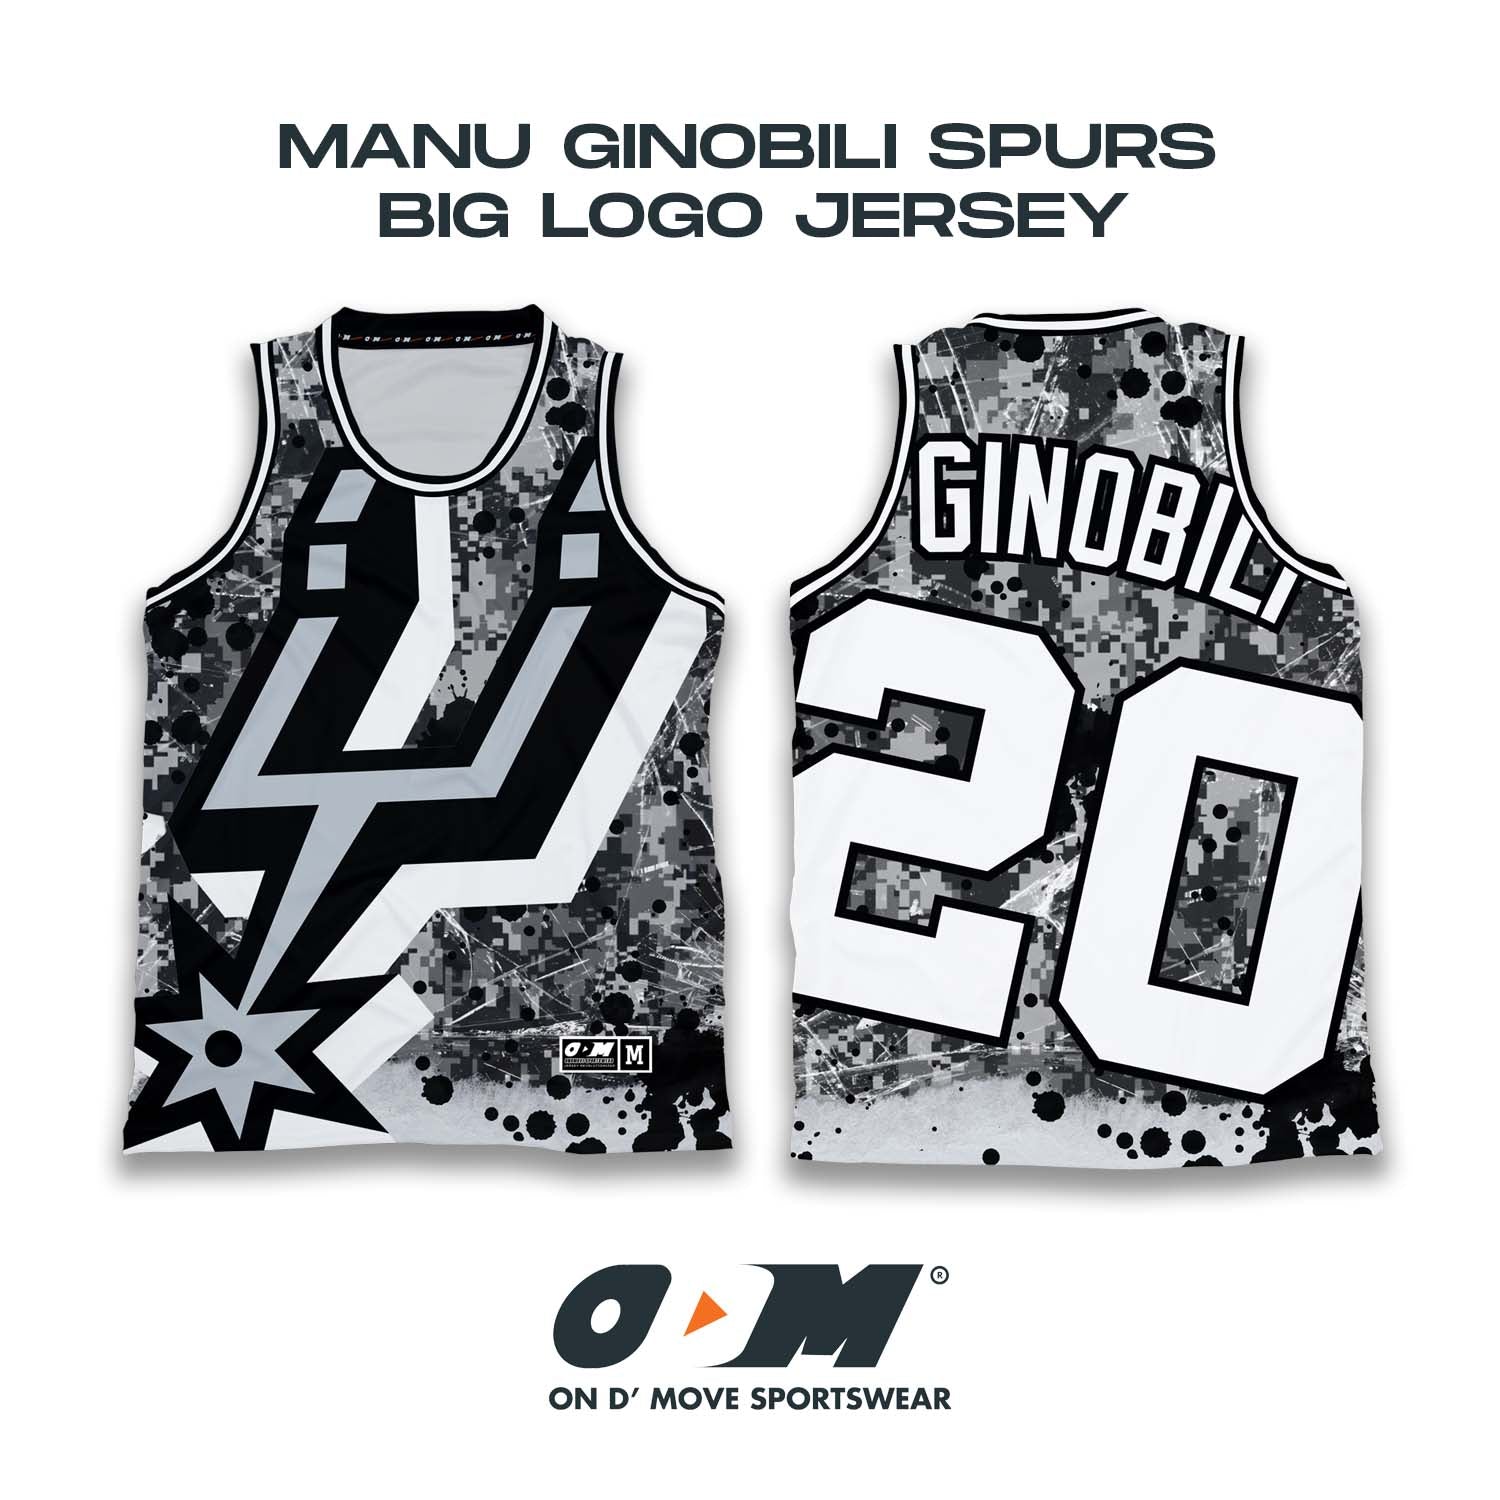 Manu Ginobili Spurs Big Logo Jersey